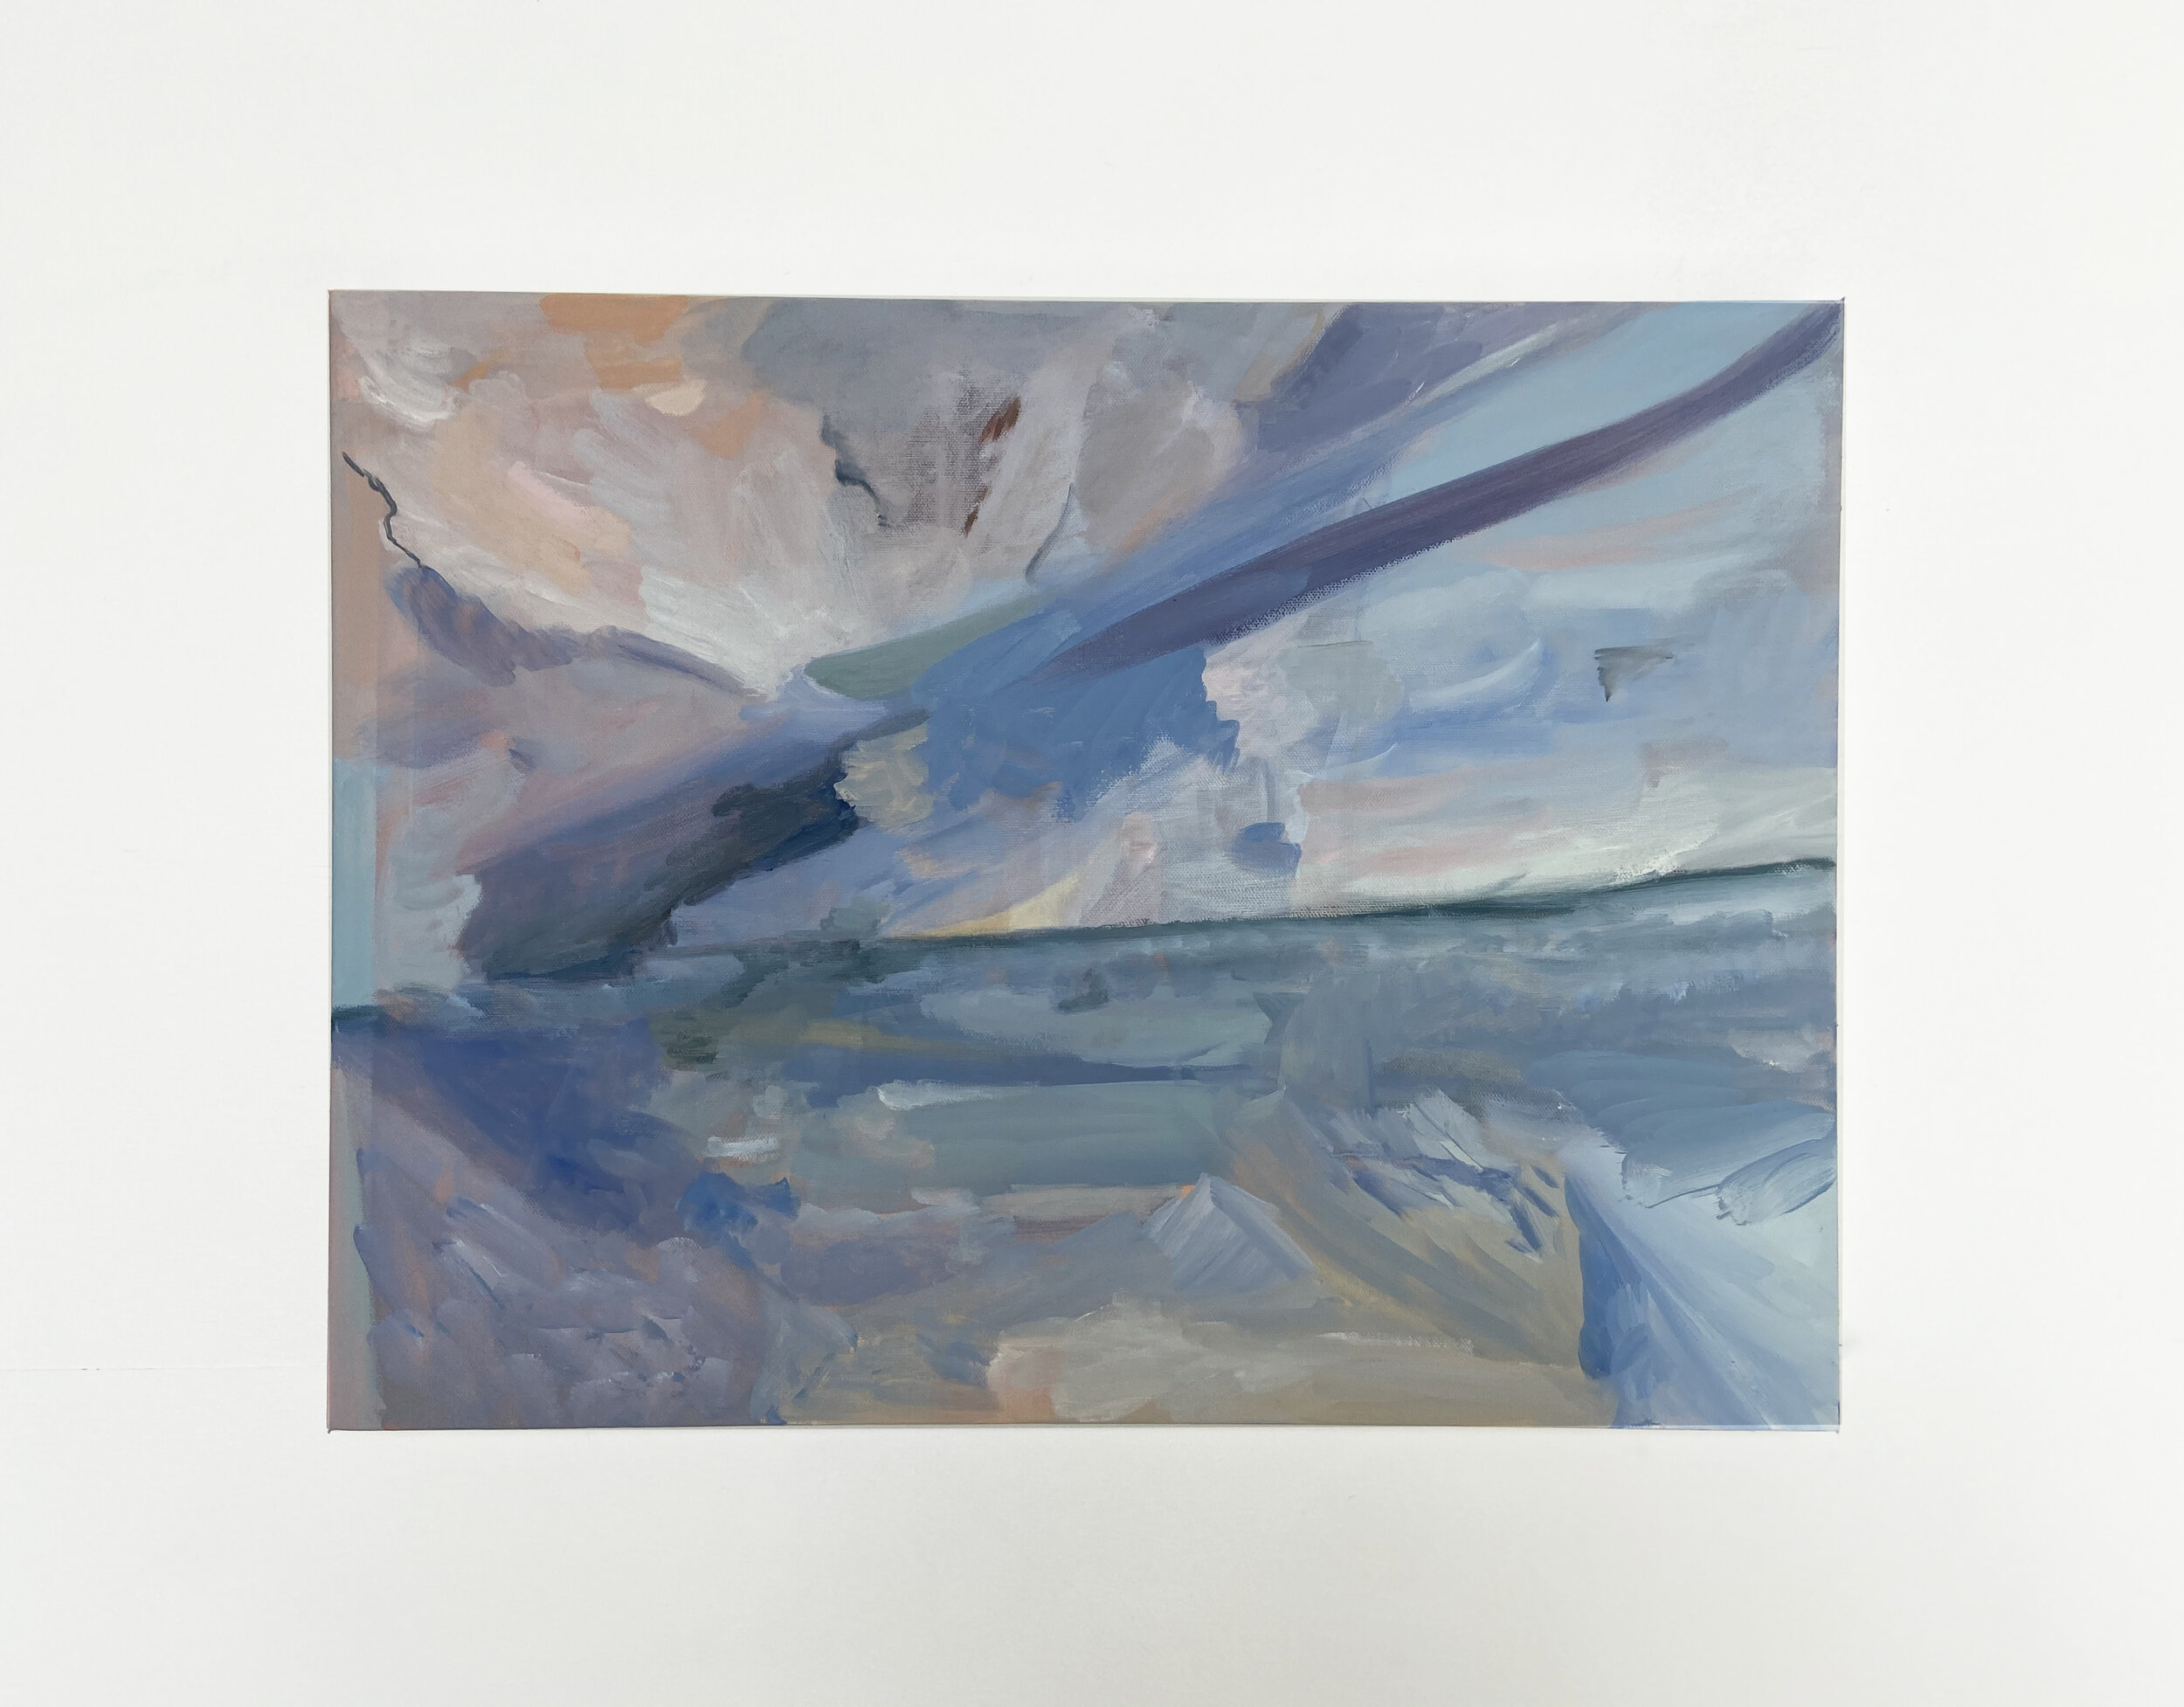   Venice Beach   18 x 24”  Oil paint on canvas 